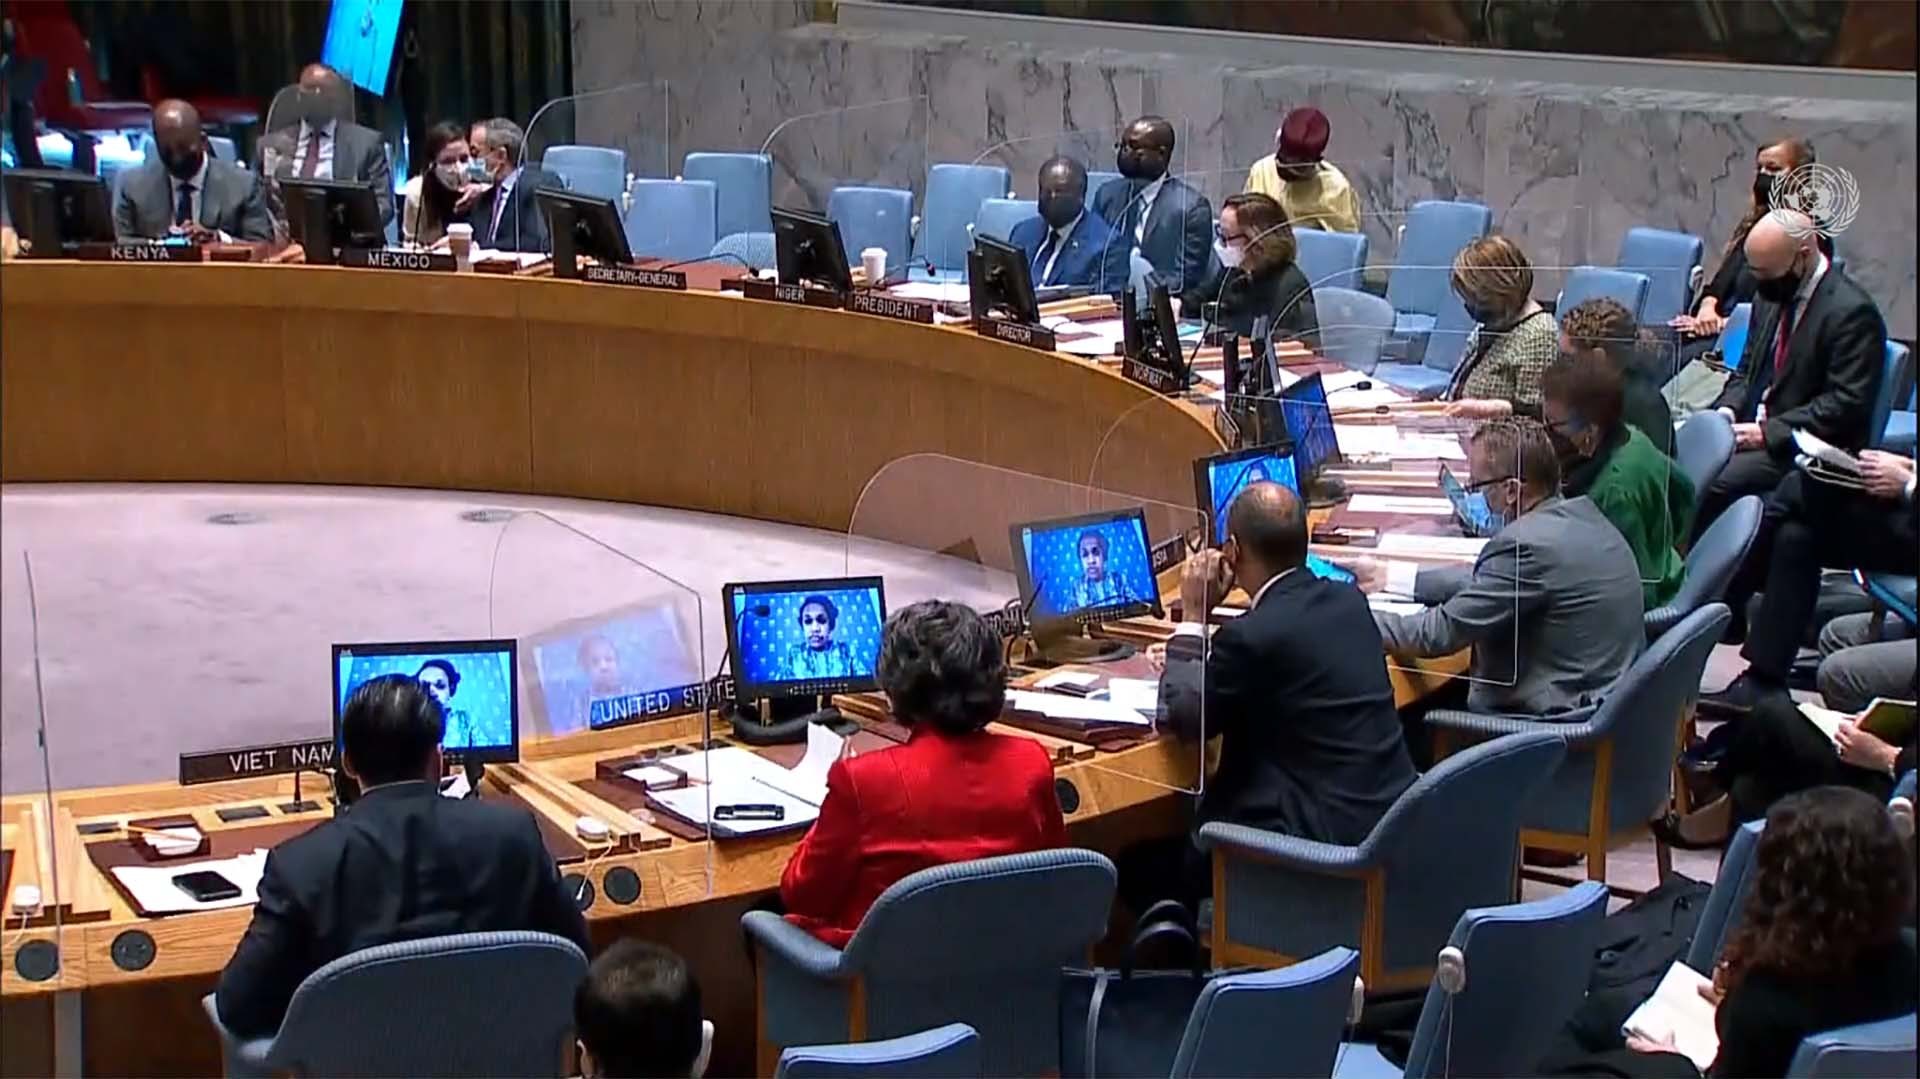 Hội đồng Bảo an (HĐBA) LHQ đã họp định kỳ về tình hình Nam Sudan và hoạt động của Phái bộ Gìn giữ hòa bình LHQ tại nước này (UNMISS).